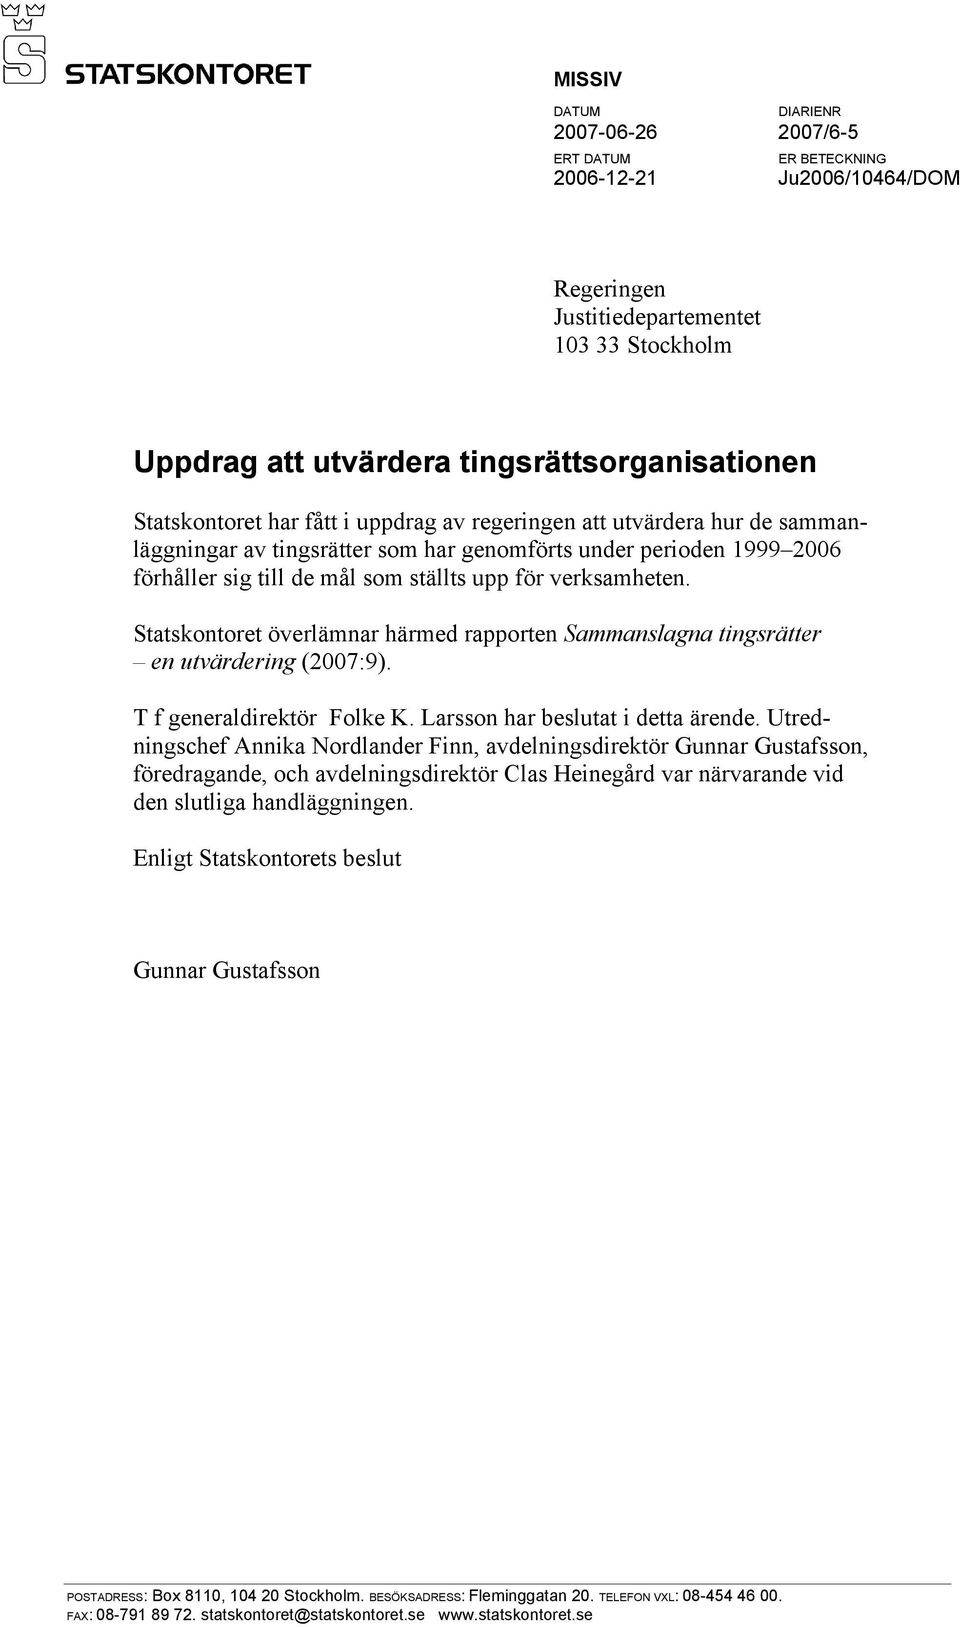 verksamheten. Statskontoret överlämnar härmed rapporten Sammanslagna tingsrätter en utvärdering (2007:9). T f generaldirektör Folke K. Larsson har beslutat i detta ärende.